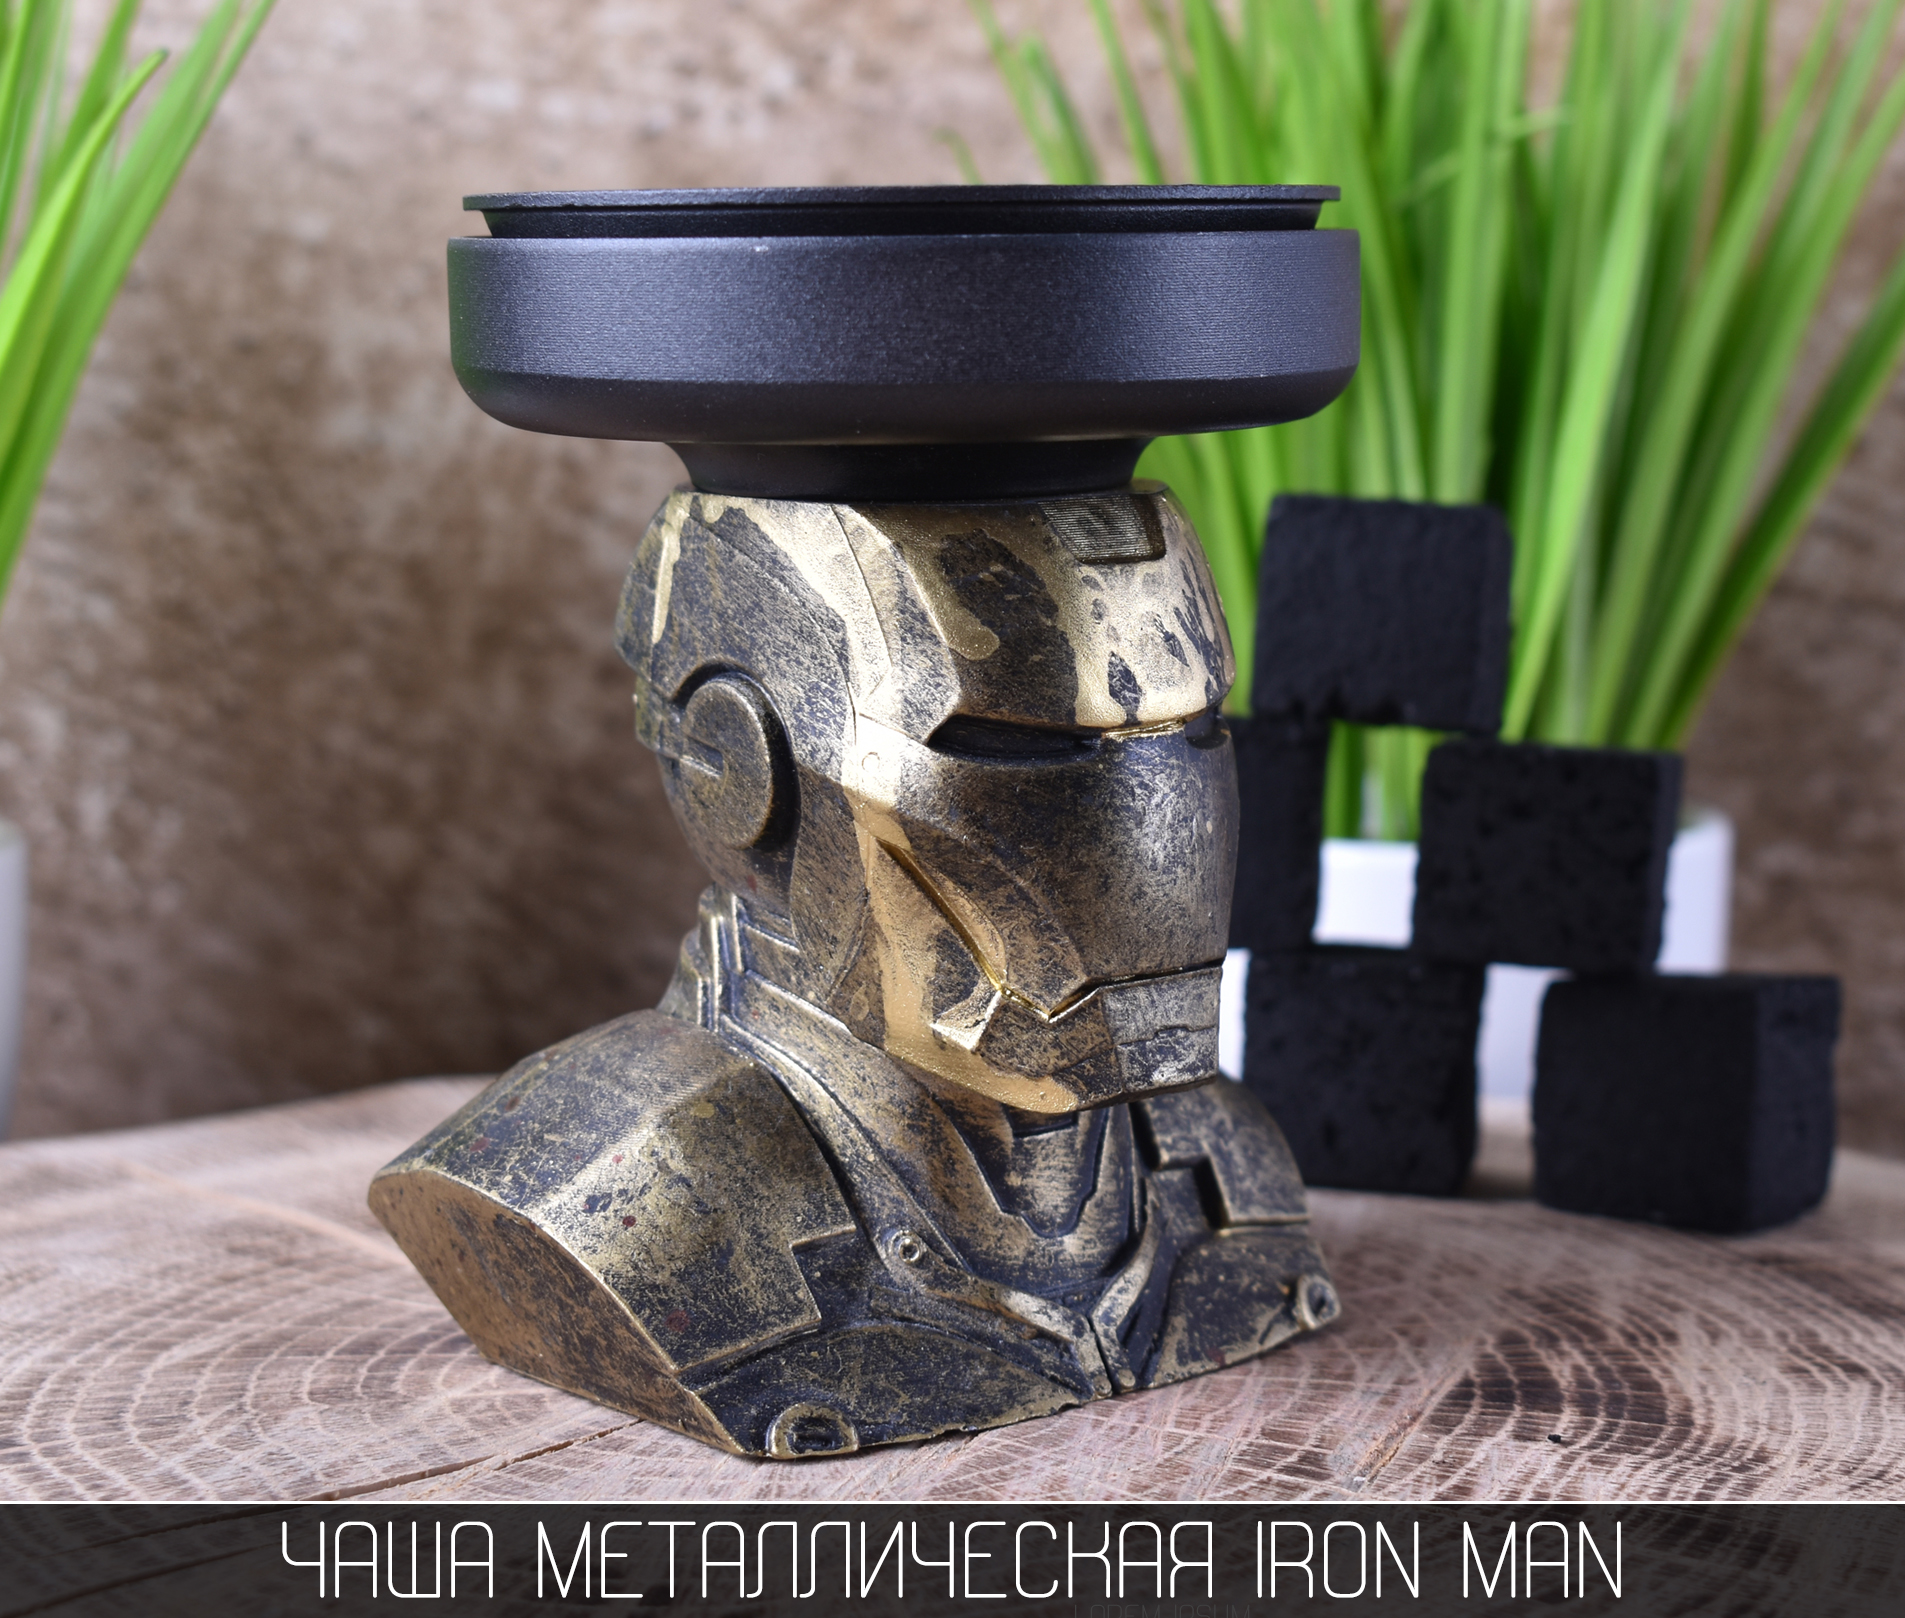 Чаша для кальяна металлическая Iron Man - фото 5 - Kalyanchik.ua